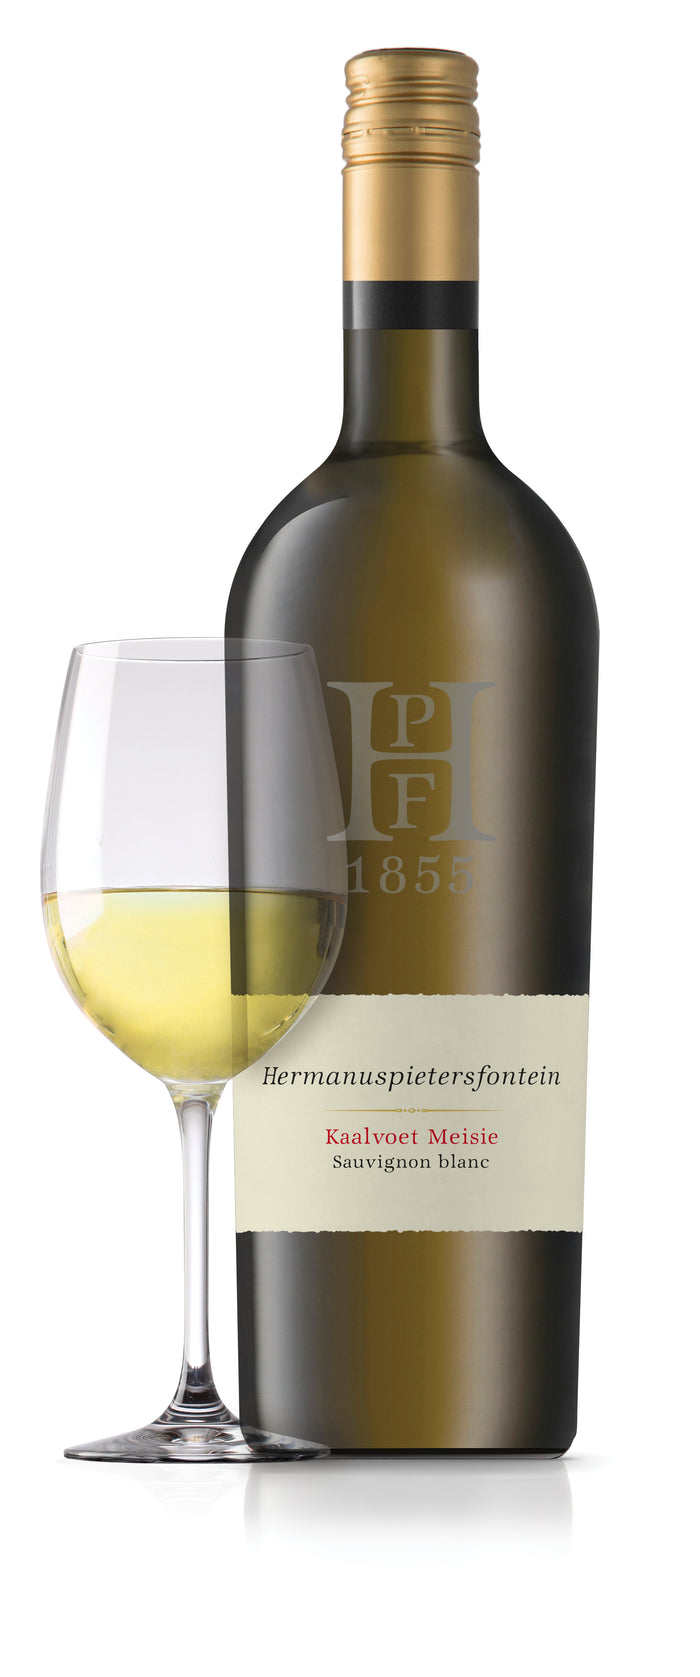 Kaalvoet Meisie (Sauvignon blanc) - Hermanuspietersfontein Wines 